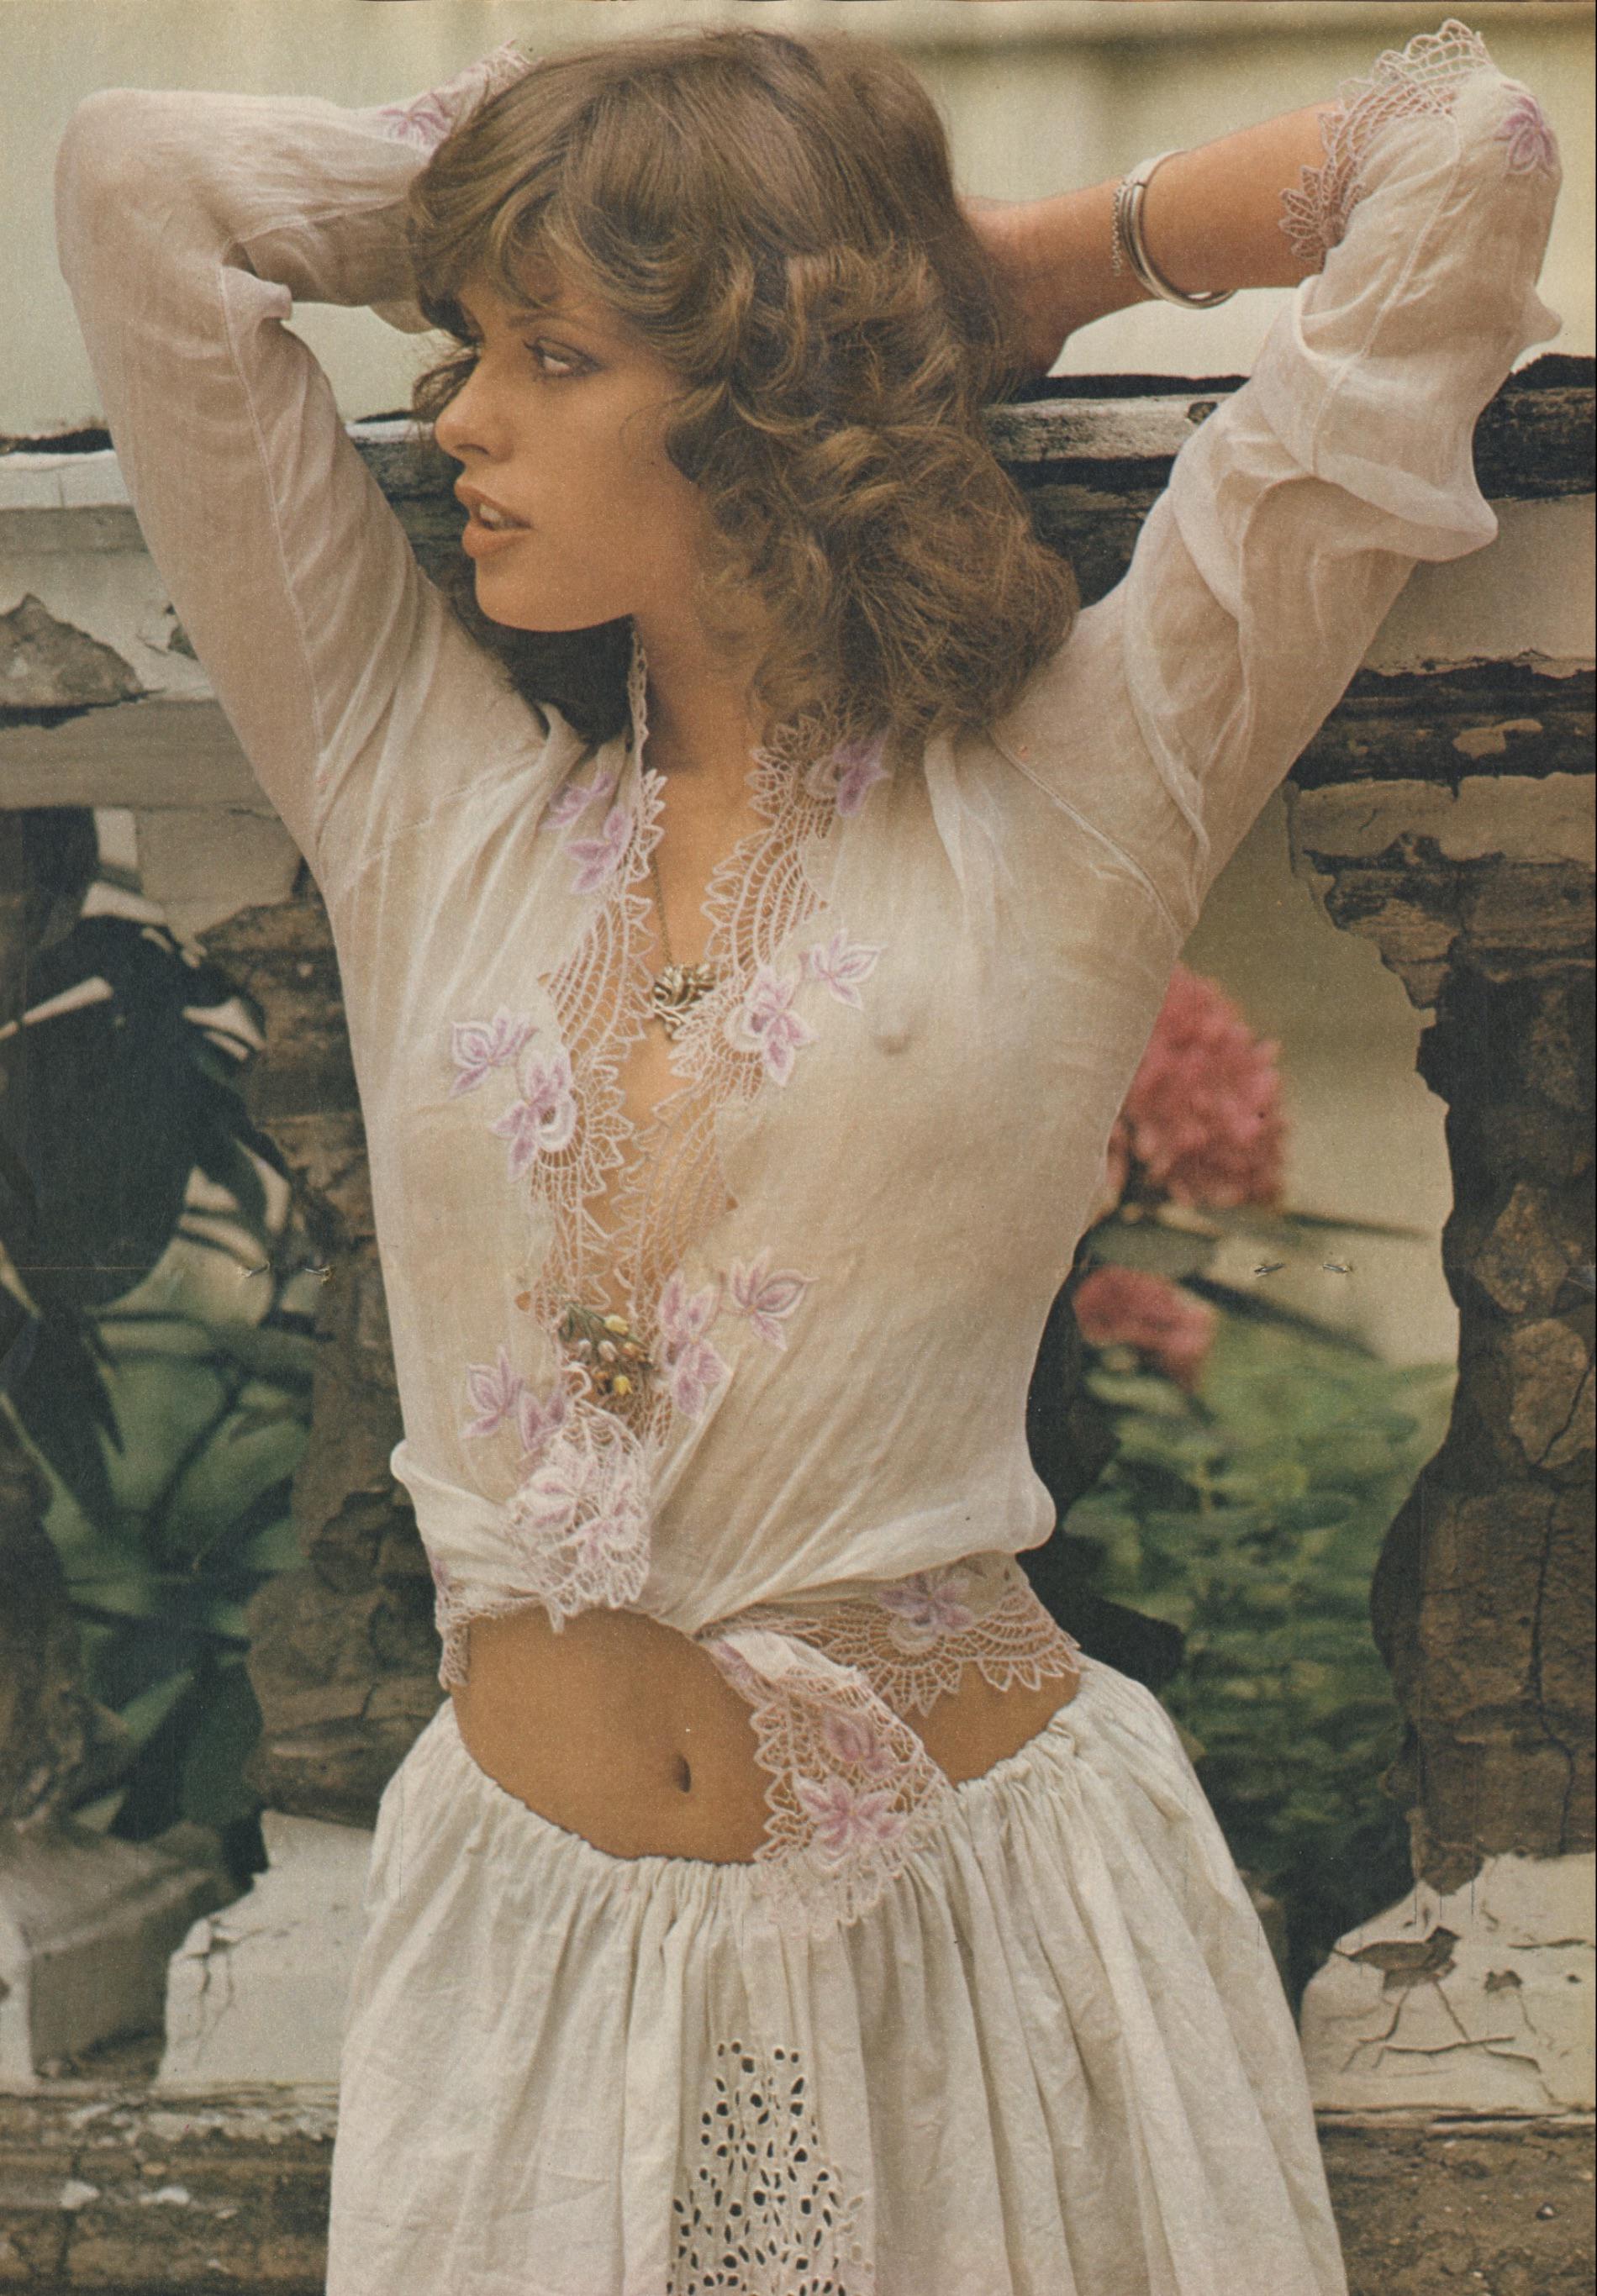 Uschi Obermaier Wearing a Top from Forbidden Fruit & Skirt from Vern Lambert (The Sunday Times Magazine 1974).jpg